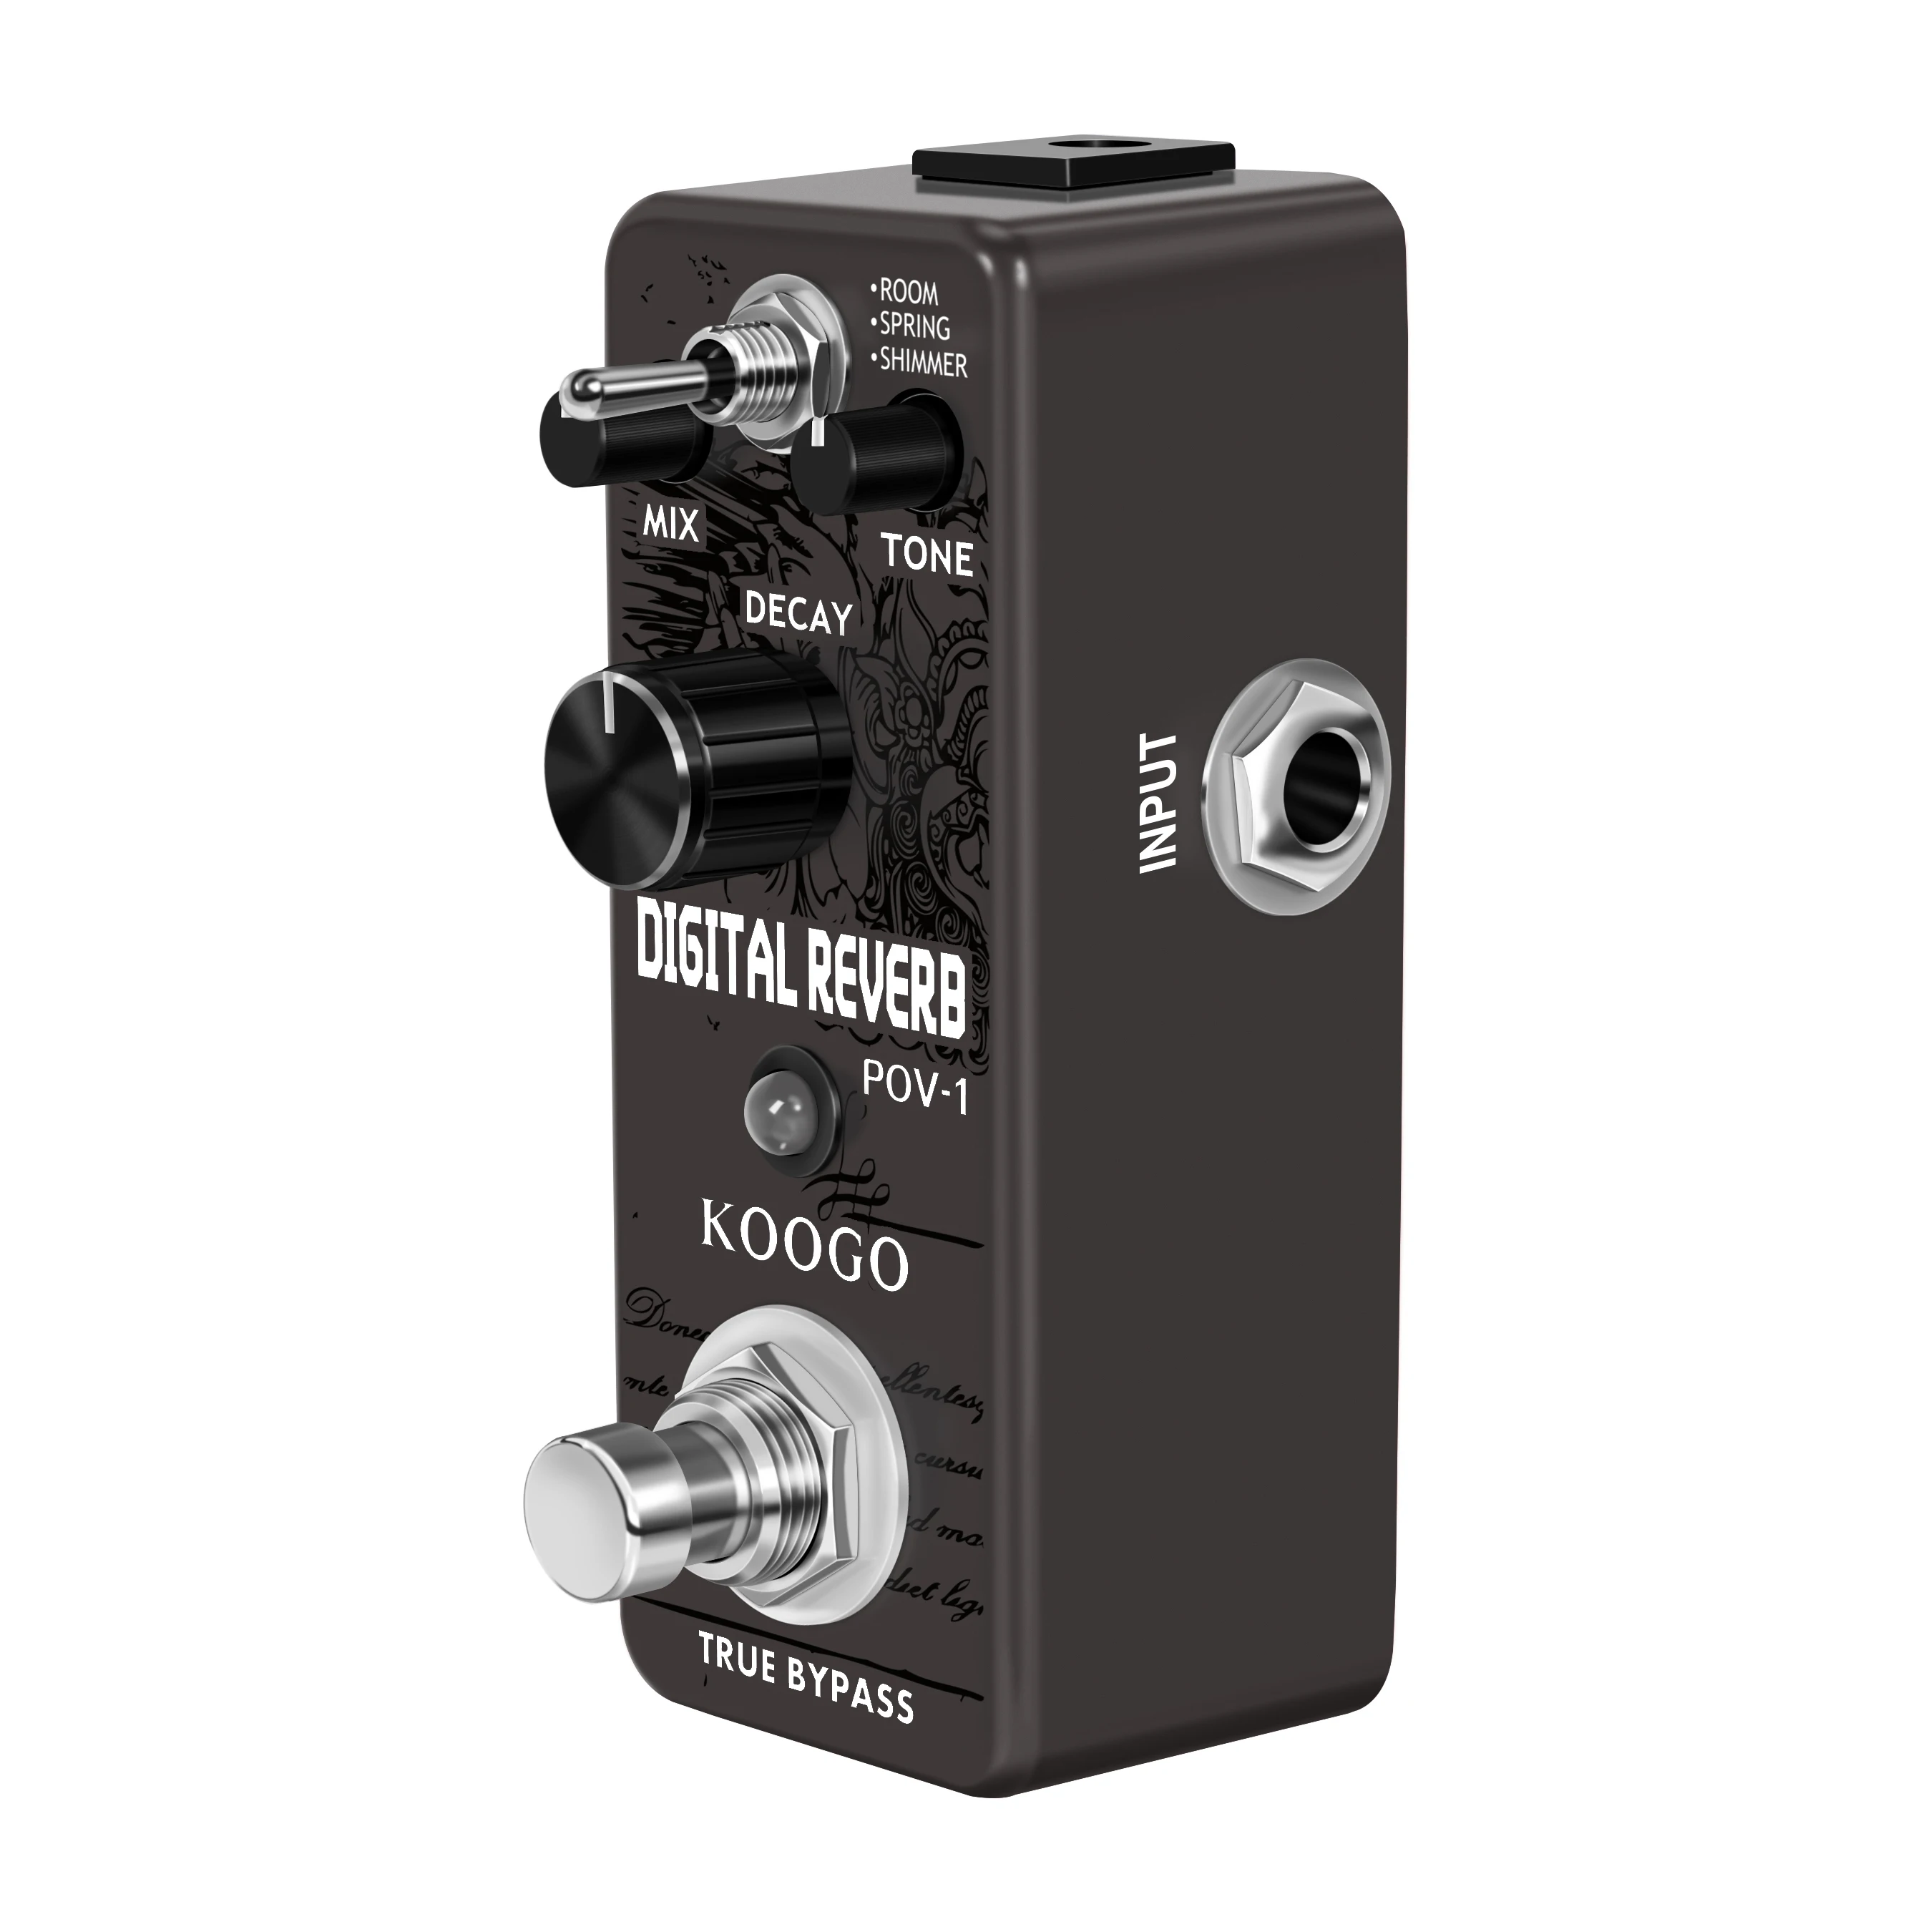 KOOGO LEF-3800 Digital Reverb Pedal Guitar Ocean Verb Pedal Room Spring Shimmer 3 Modes Wide Range With Storage Of Timbre Pedal enlarge